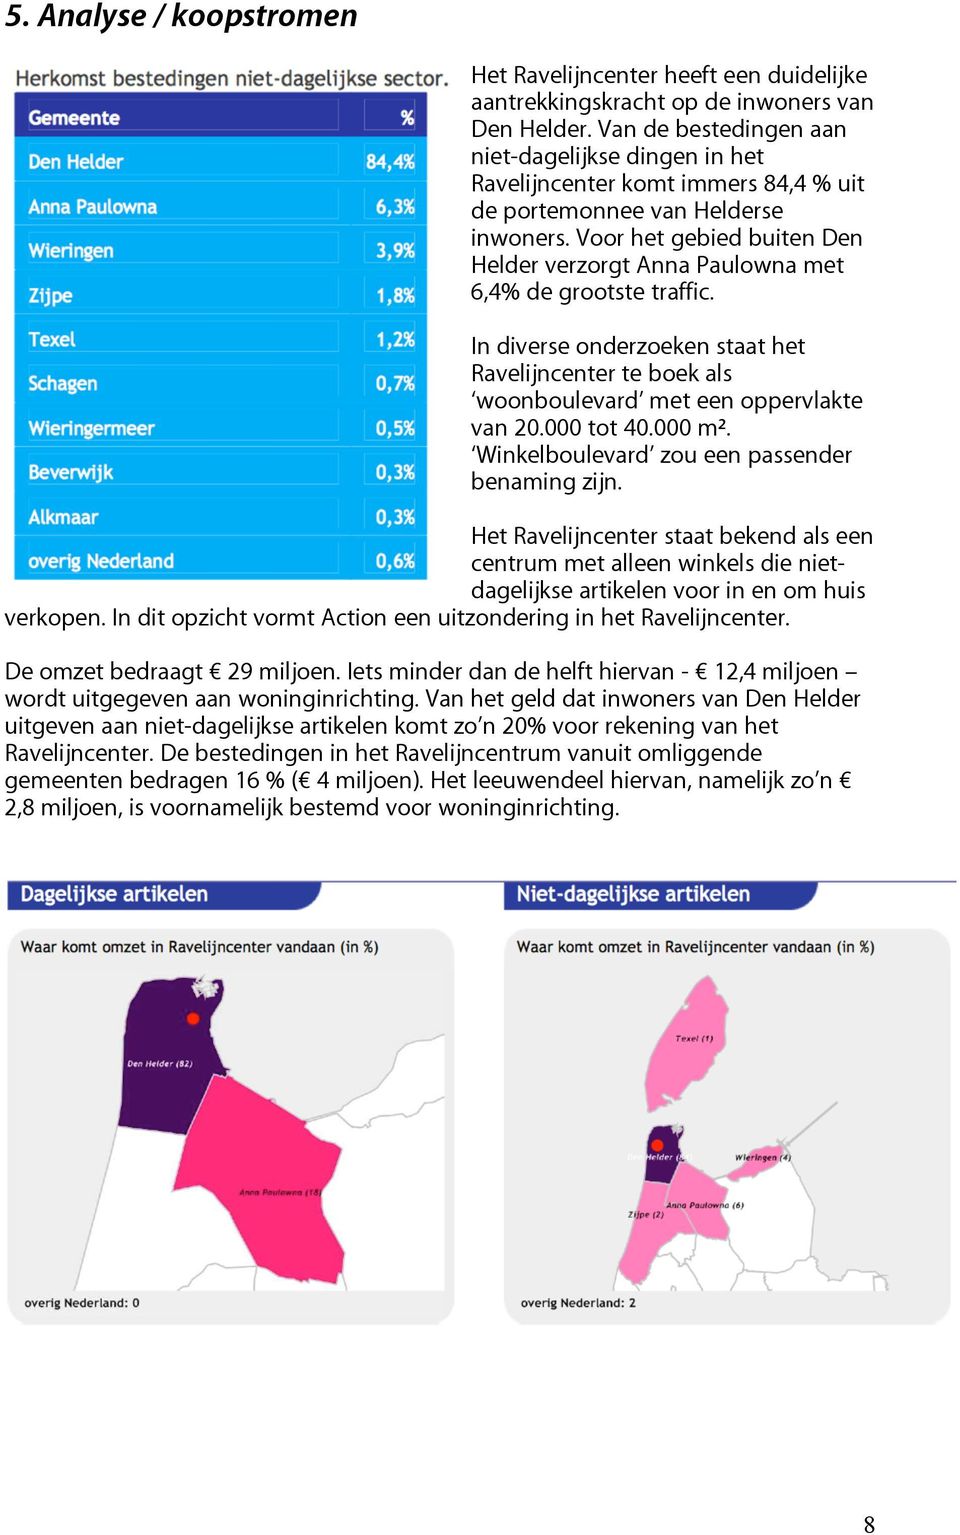 Voor het gebied buiten Den Helder verzorgt Anna Paulowna met 6,4% de grootste traffic. In diverse onderzoeken staat het Ravelijncenter te boek als woonboulevard met een oppervlakte van 20.000 tot 40.